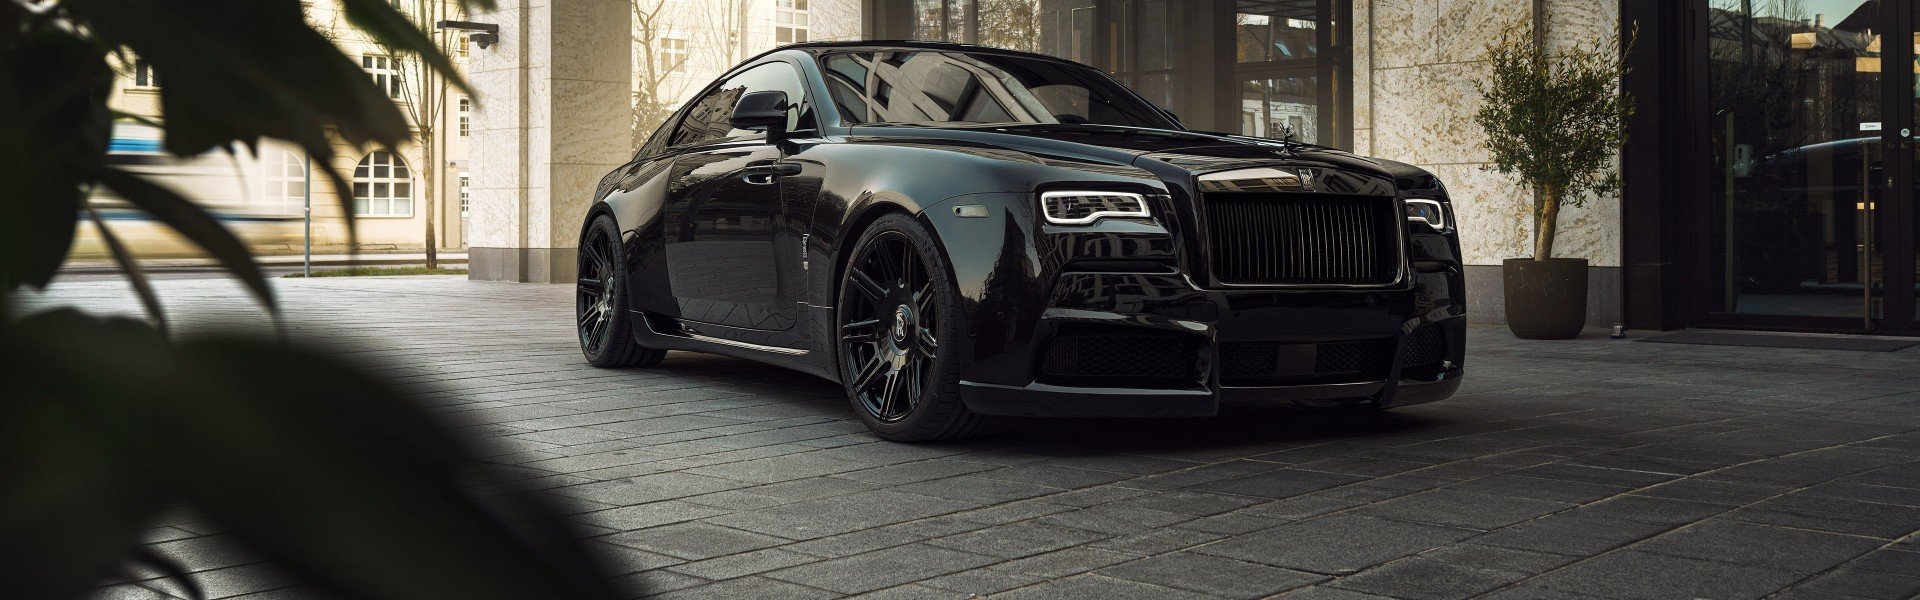 Widescreen Spofec Rolls Royce Wraith